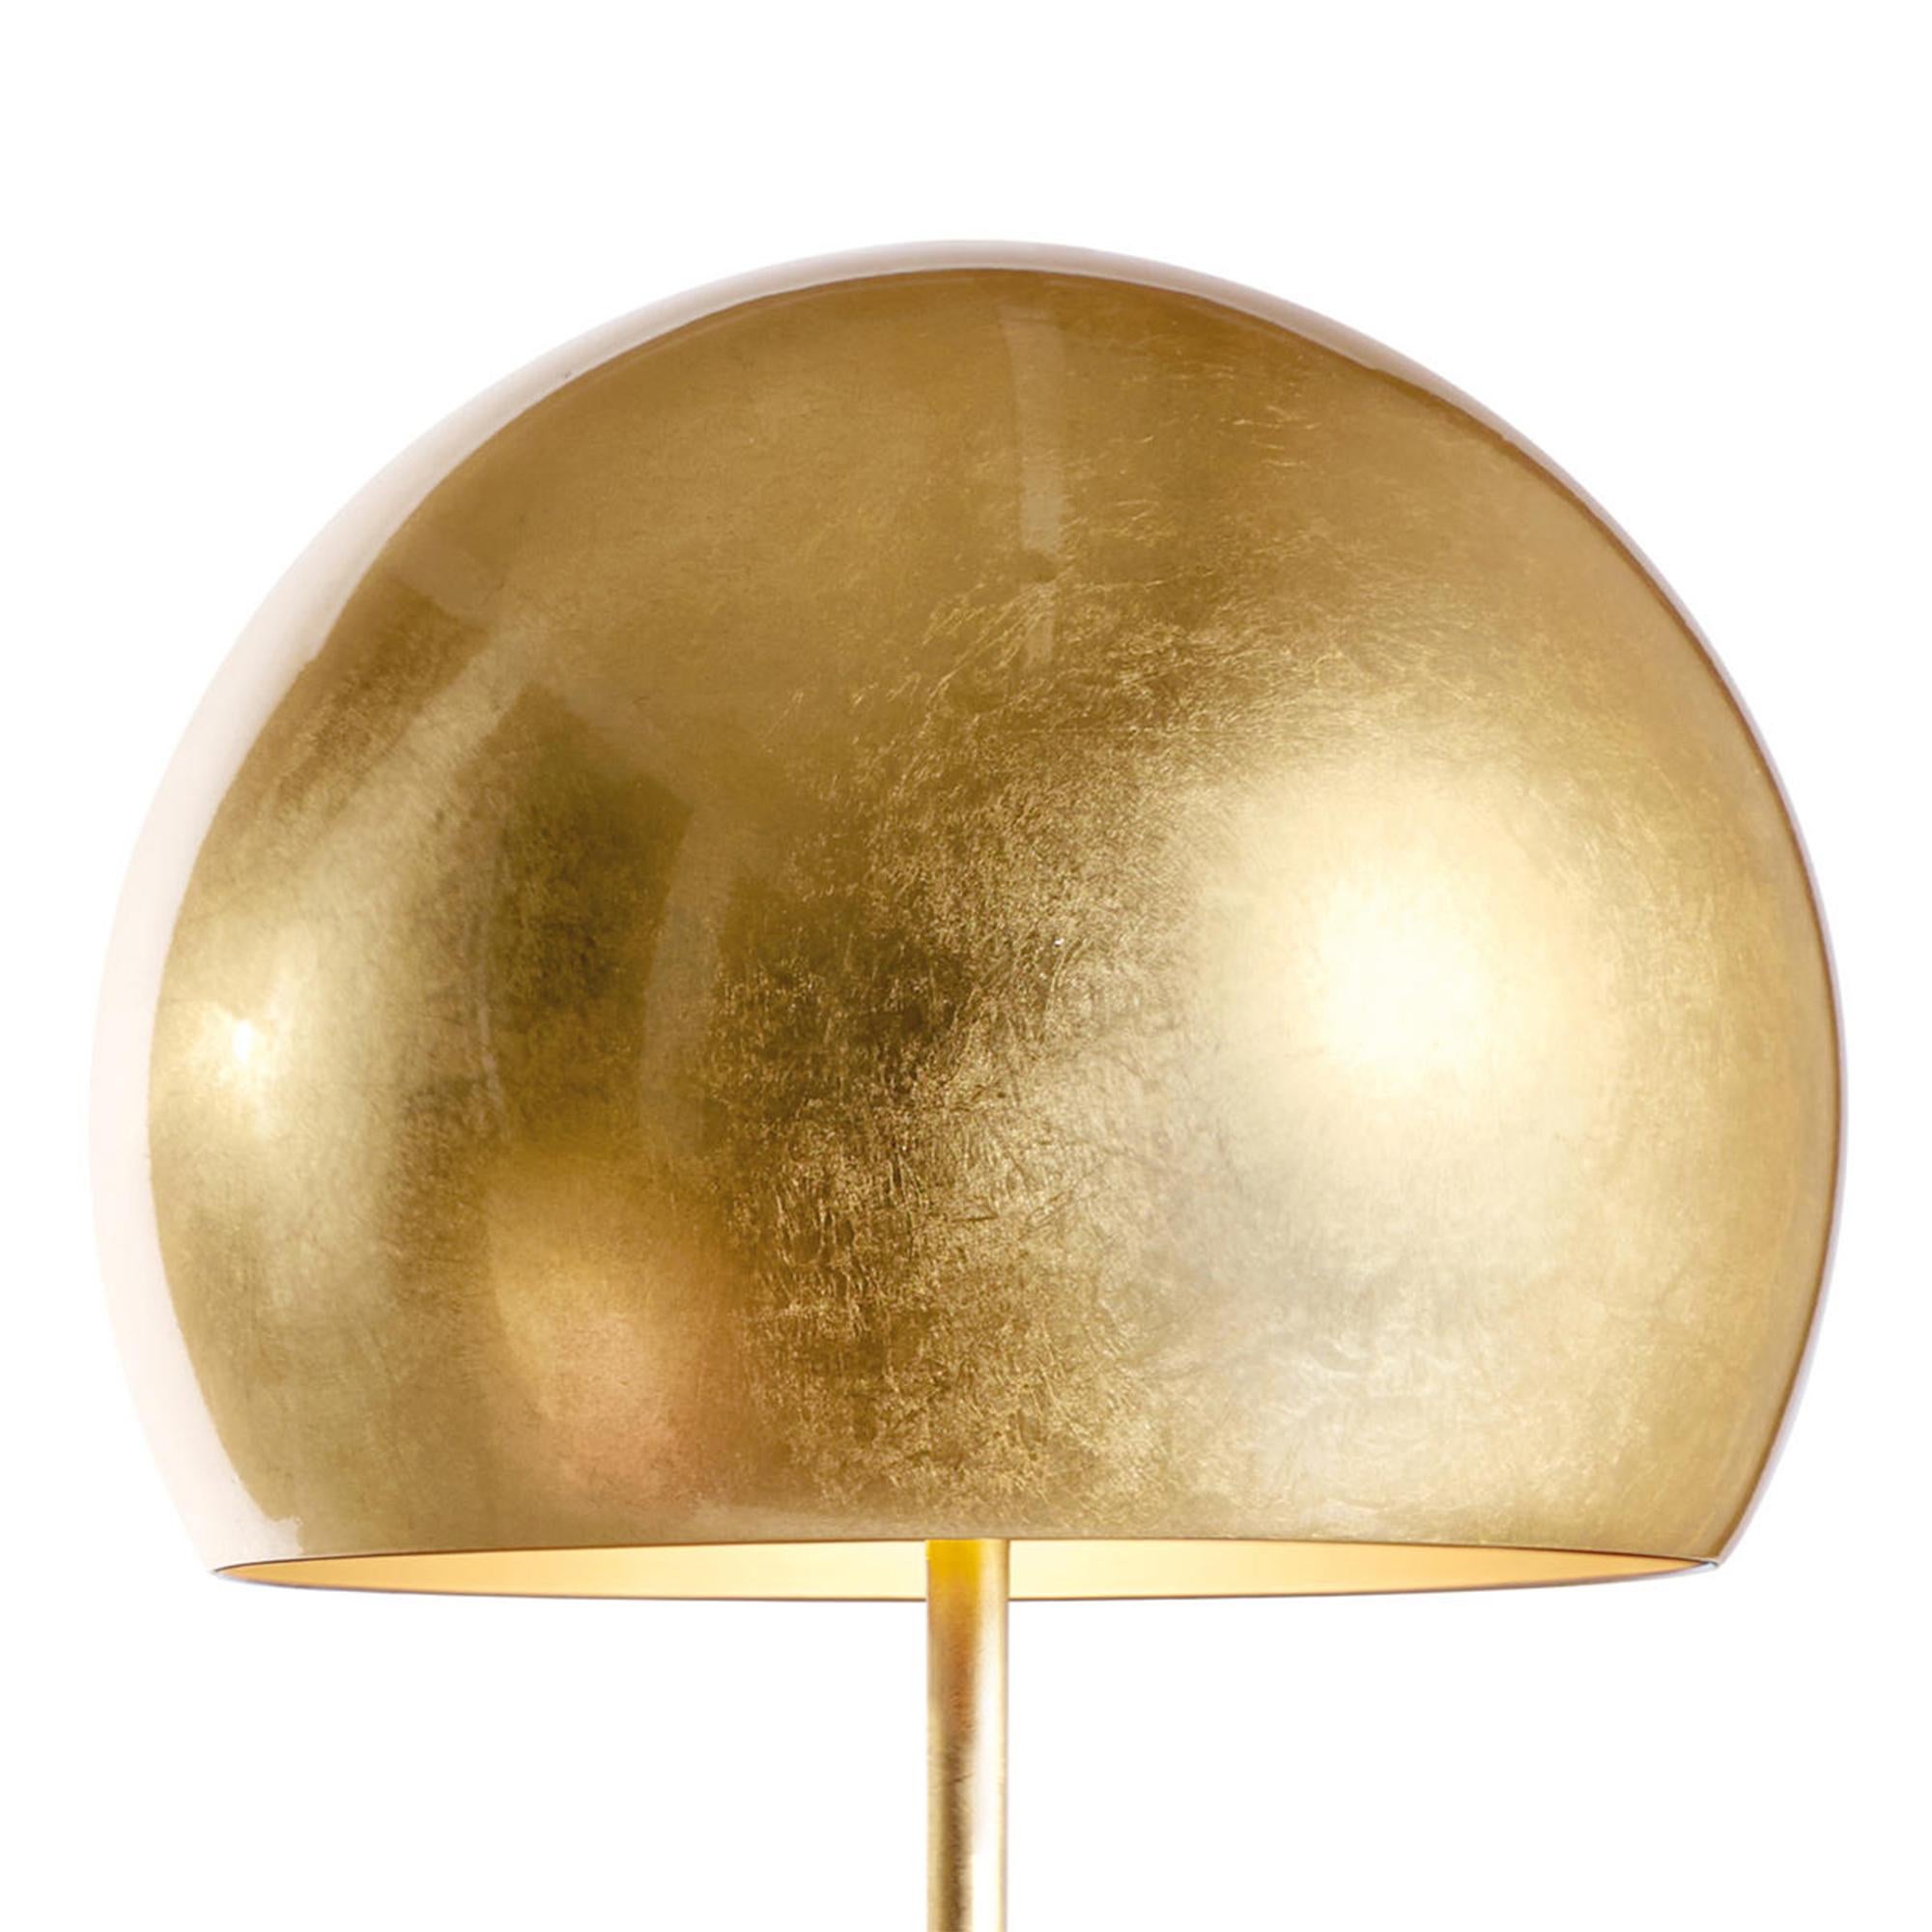 Lampe de table dôme feuille d'or avec base et pieds en fer
et avec un abat-jour en aluminium, le tout recouvert de feuilles d'or
et dans l'abat-jour intérieur verni à l'or. Avec 2 ampoules, lampe
support de type E27, max 60 watt. Ampoules non